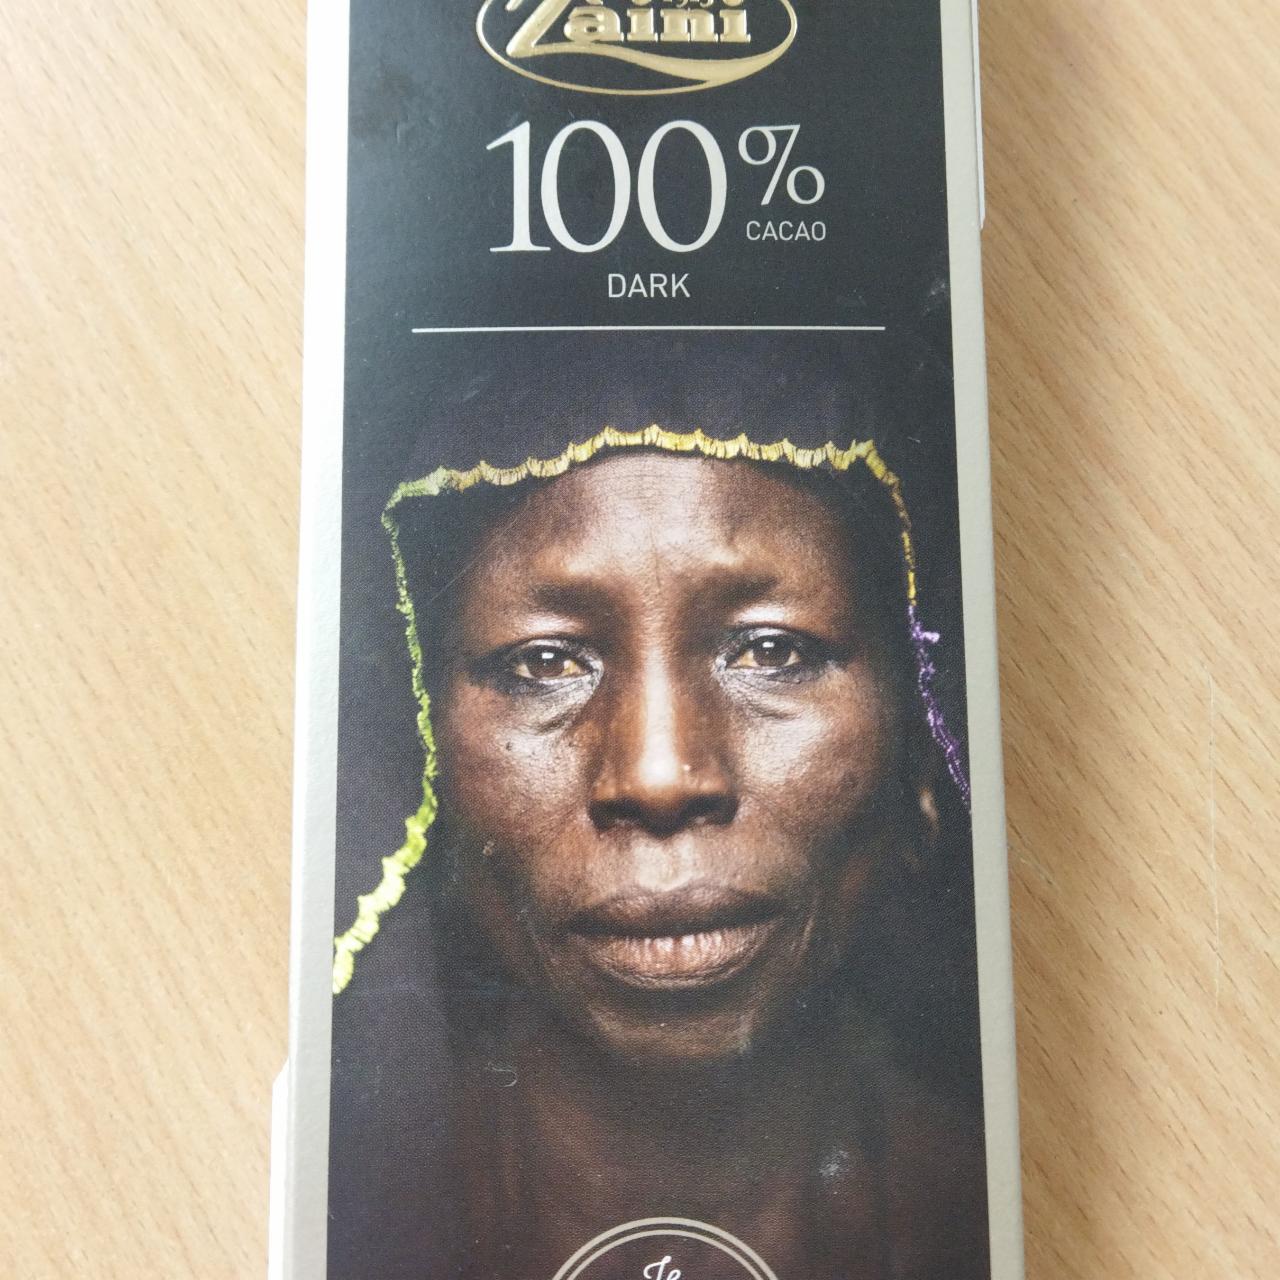 Фото - Шоколад 100% cacao Dark chocolate Zaini